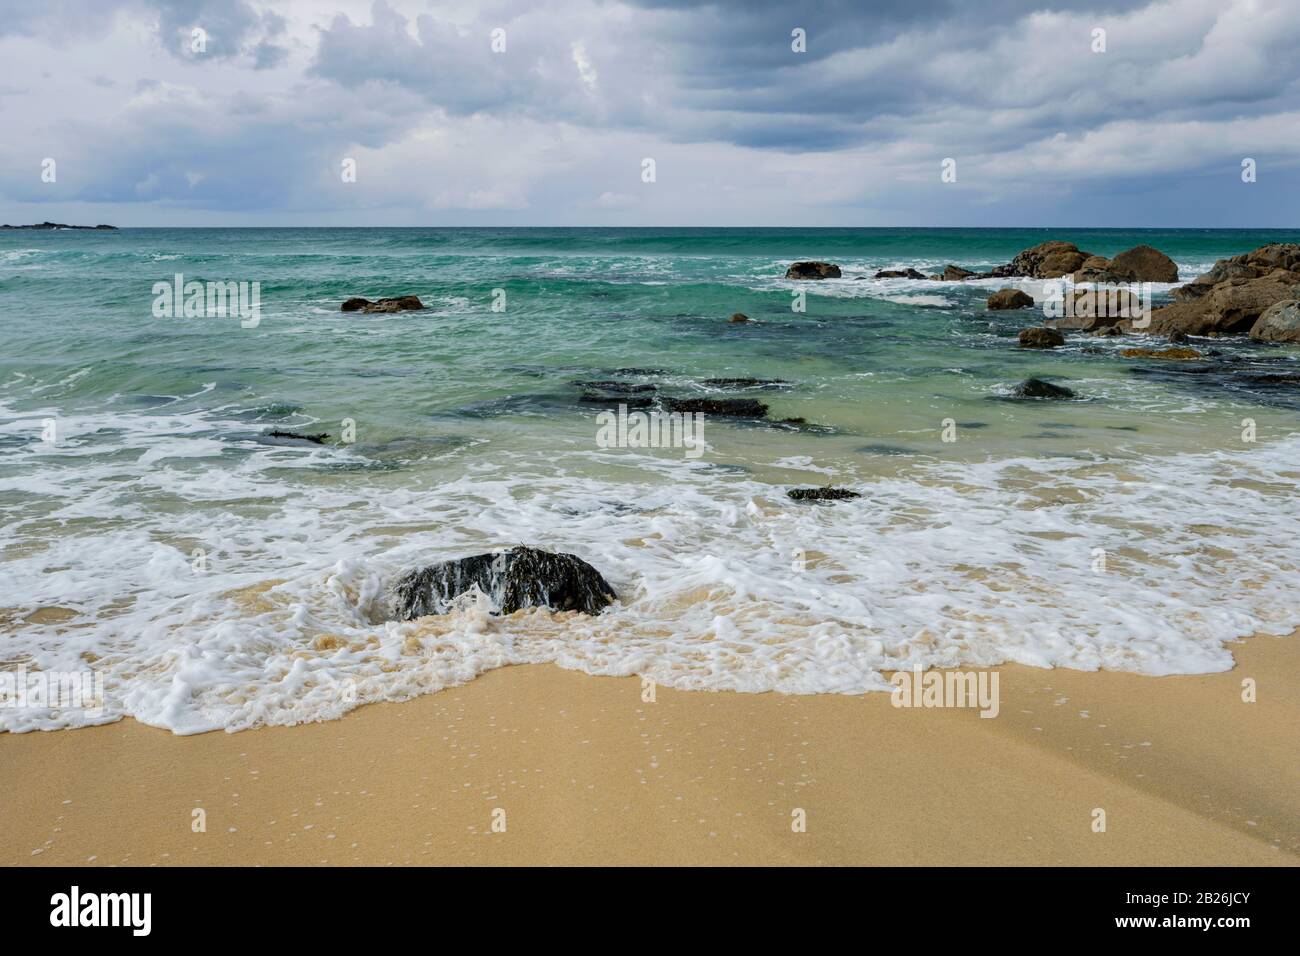 Porthmeor Beach St Ives, Cornwall, Surfstrand, künstlerische Cornwall, Cornwall Farben, Meer, Sand, Felsen, Surfen, Urlaubsziel, UK Reise, Stockfoto